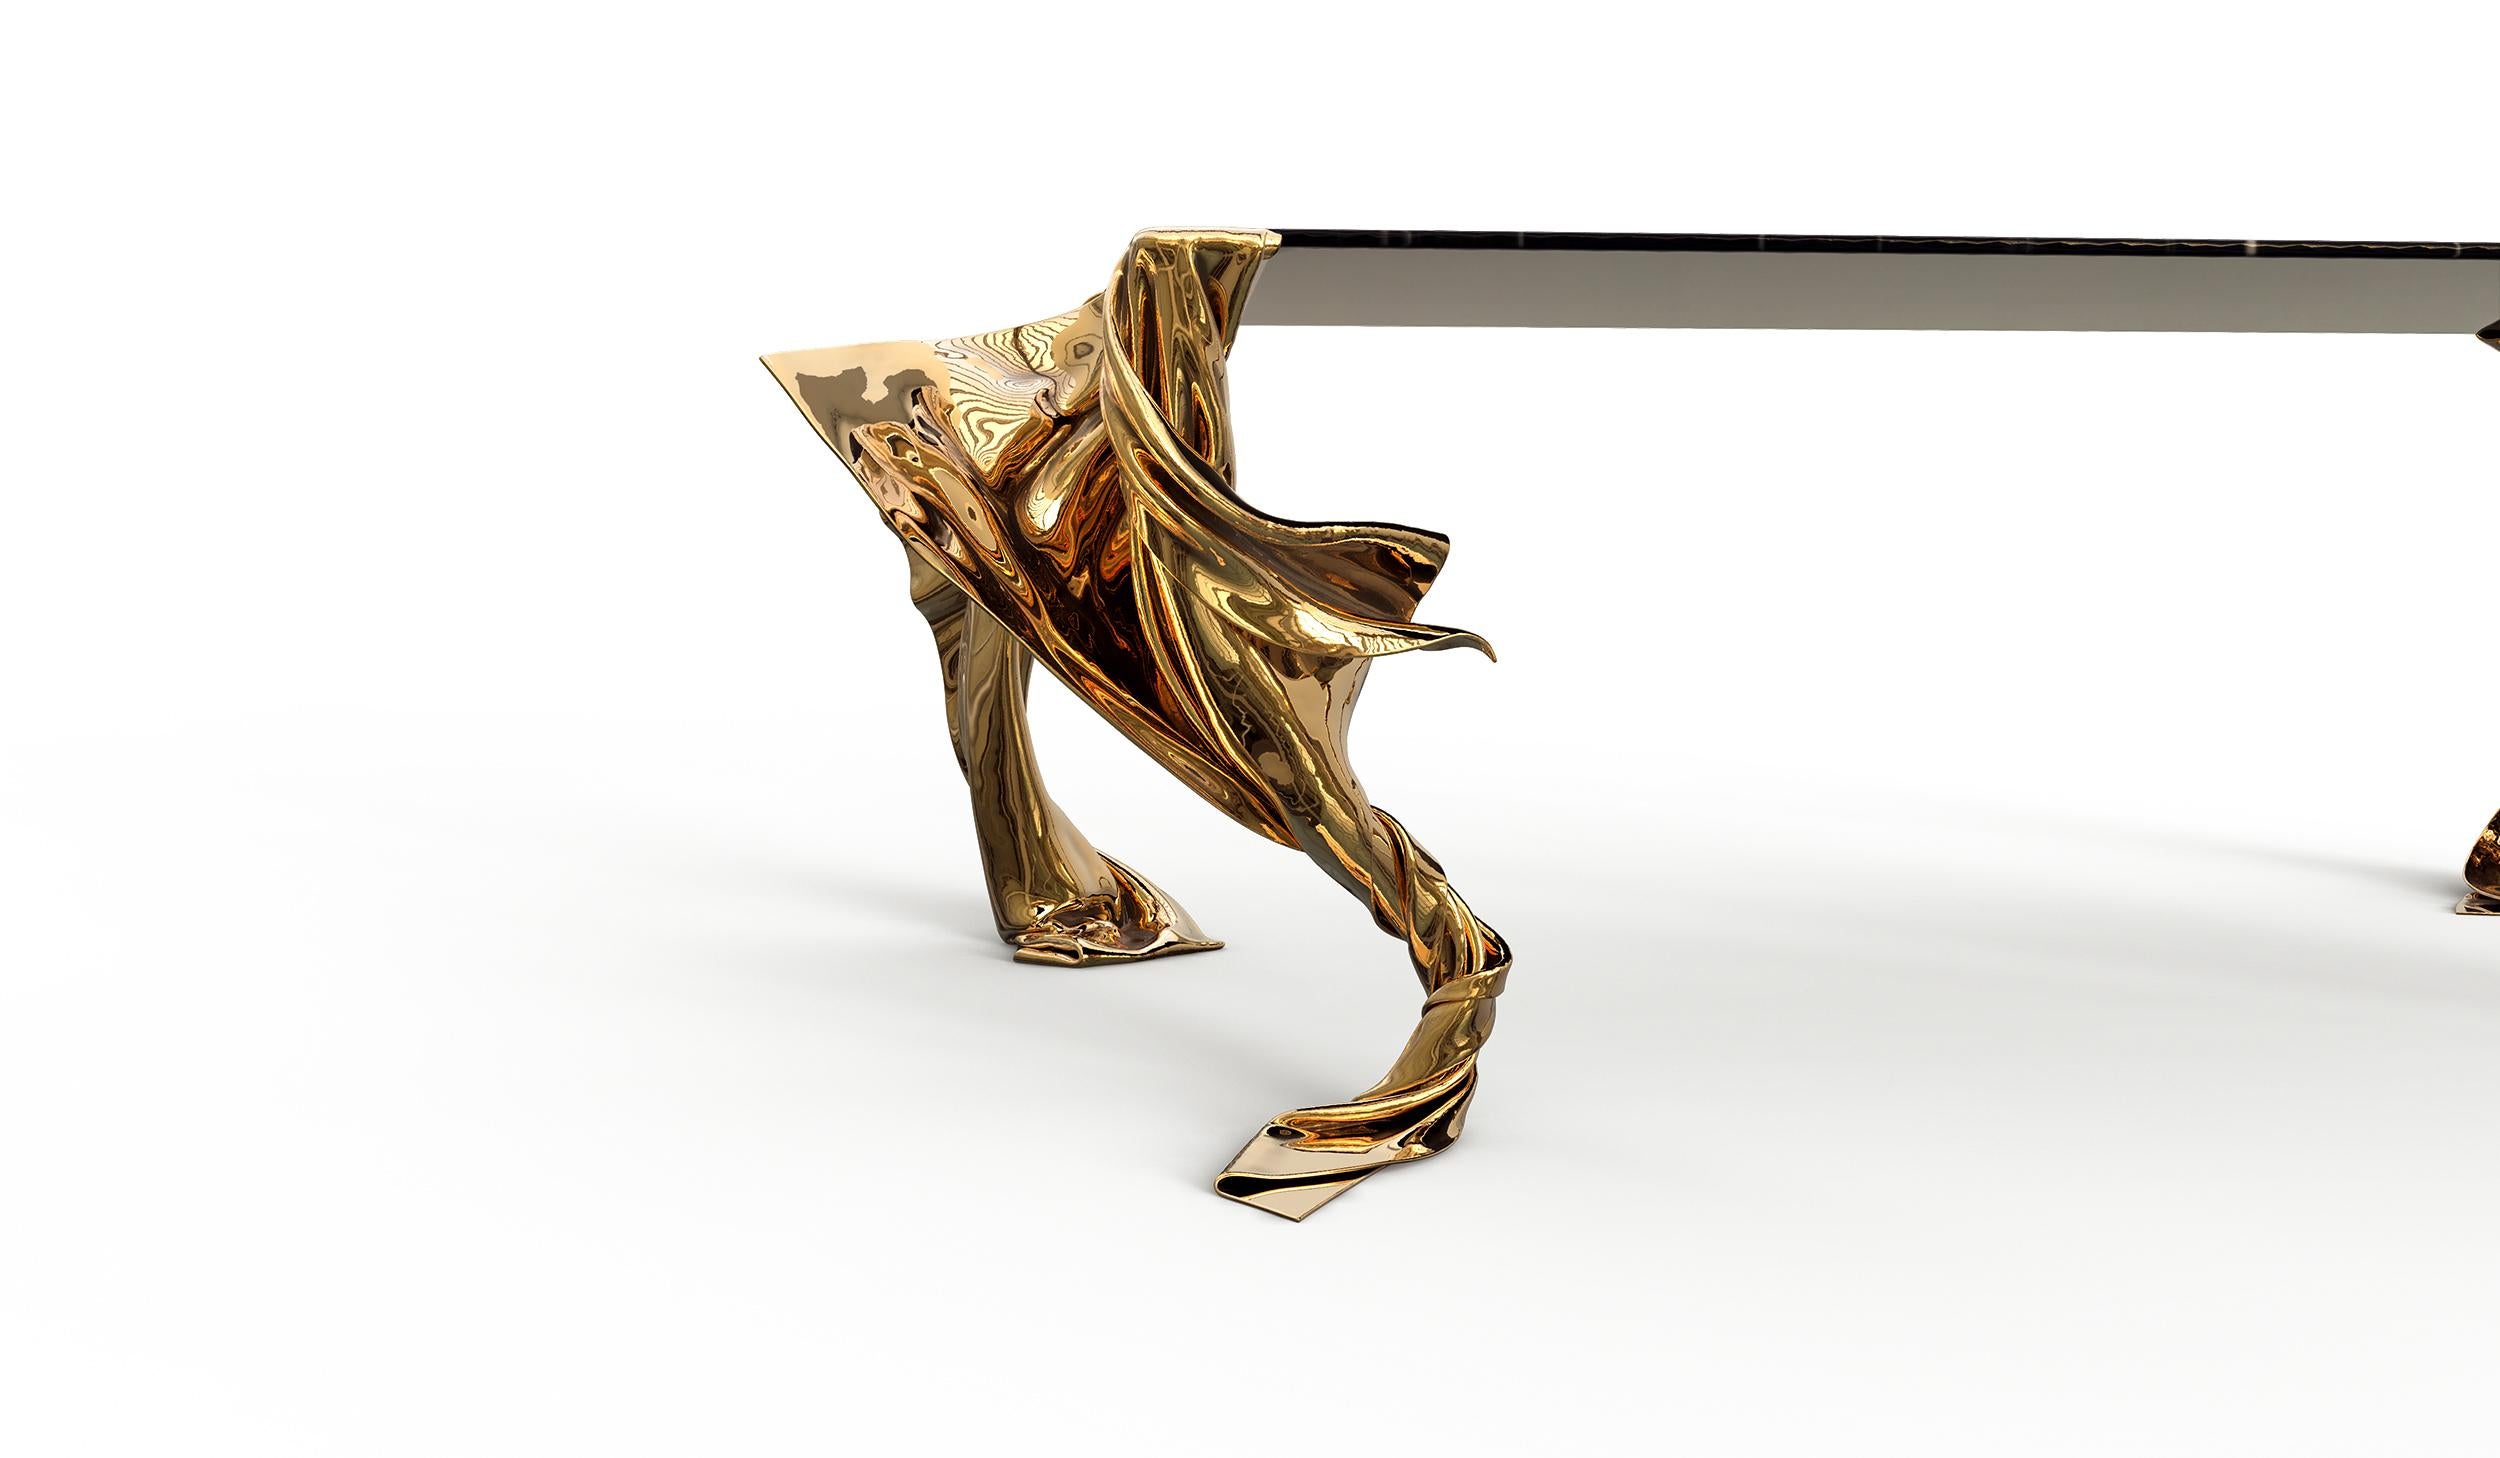 La table de salle à manger Volante, une pièce distinguée de la Collection Sally, allie avec art l'élégance intemporelle du marbre à la beauté sculpturale du bronze coulé. Les pieds de la table témoignent d'une conception fluide, le bronze étant